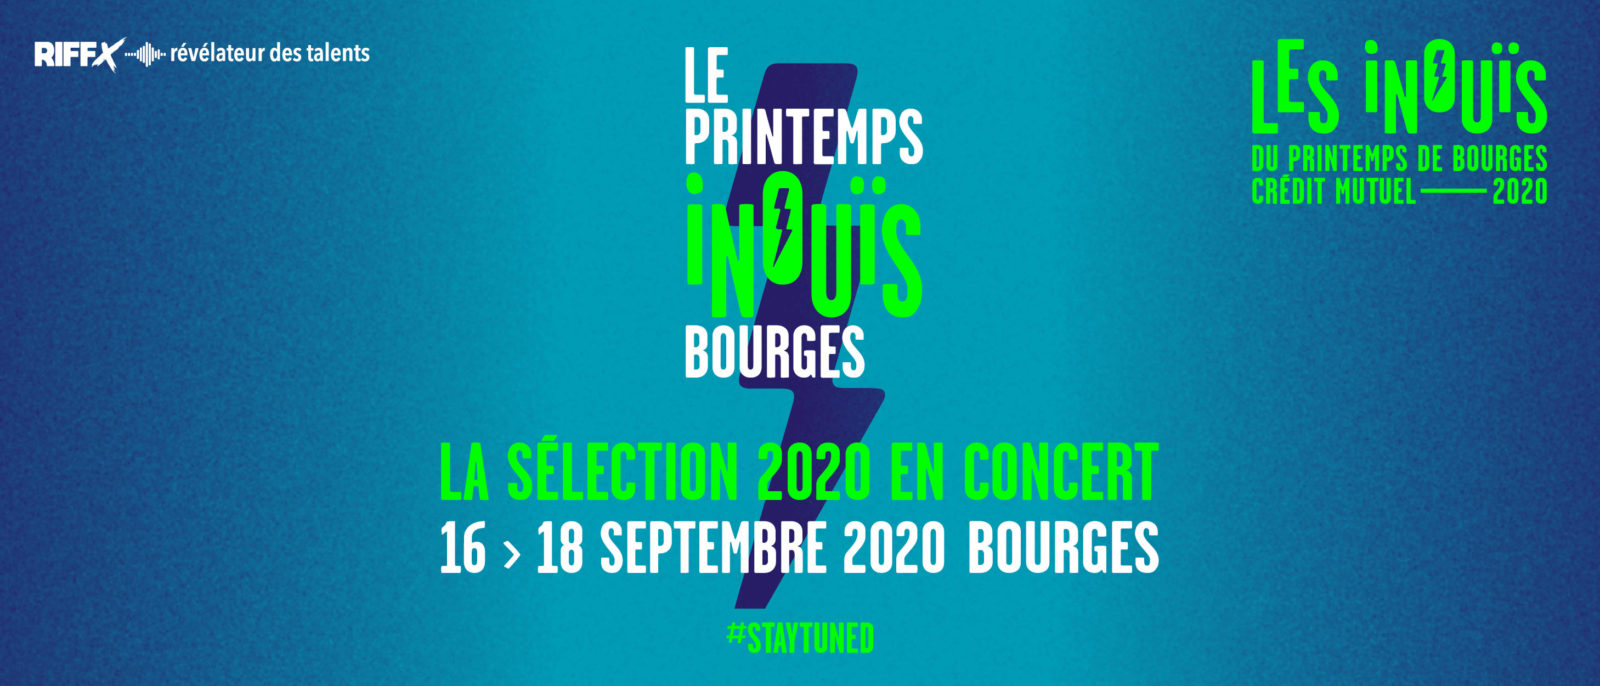 LE PRINTEMPS iNOUïS C'EST 34 CONCERTS DU 16 AU 18 SEPTEMBRE 2020 À BOURGES !